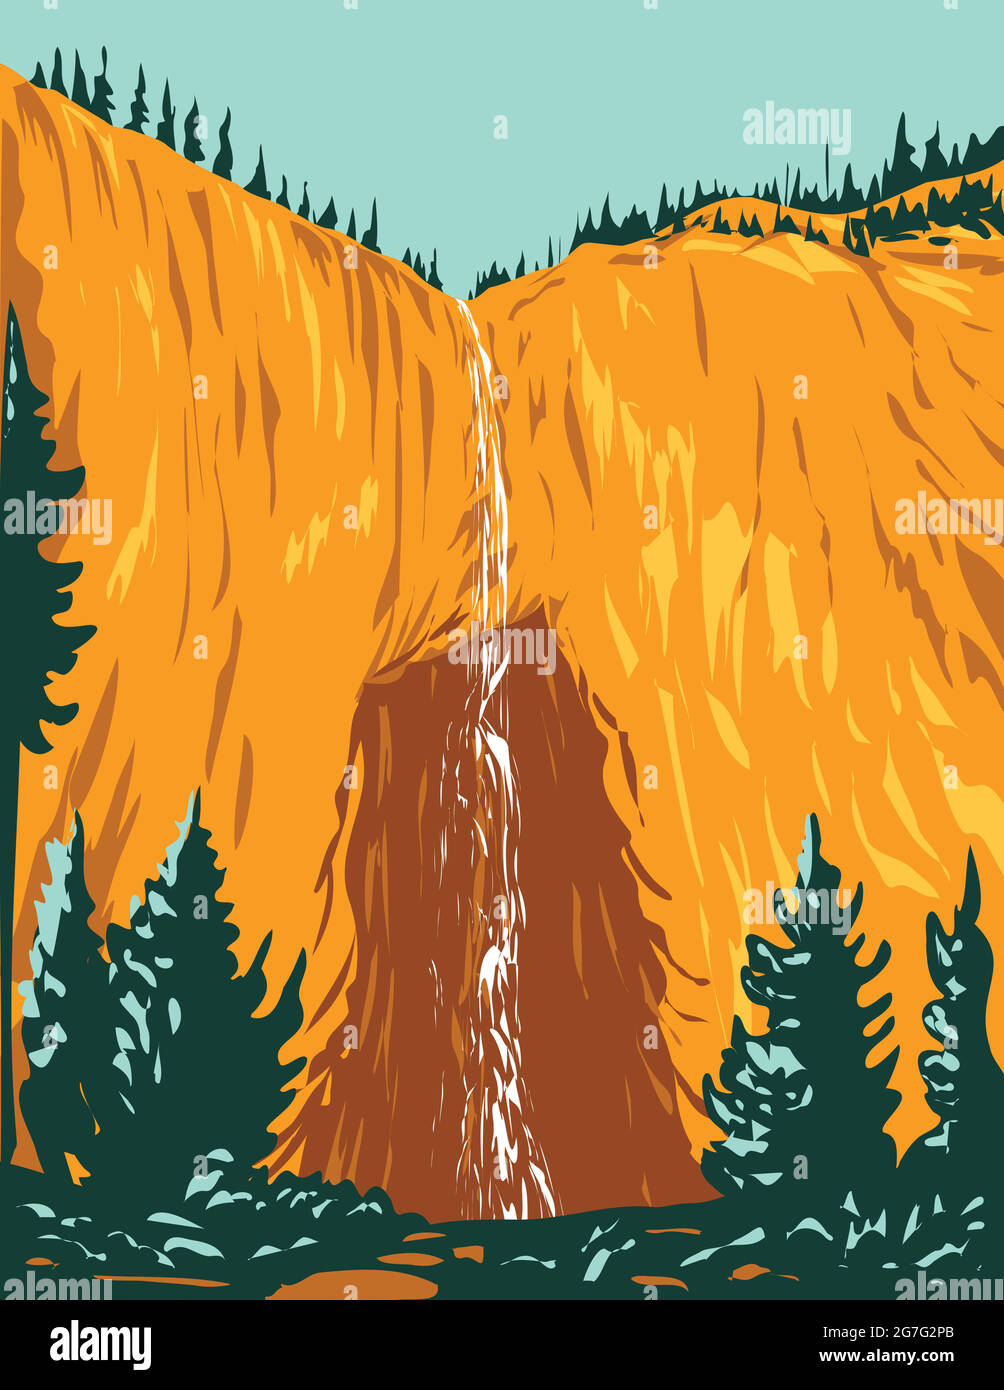 WPA-Plakatkunst von Fairy Falls, einem der höchsten Wasserfälle von Yellowstone im Yellowstone National Park Teton County Wyoming USA, wurde im Rahmen eines Projekts realisiert Stock Vektor